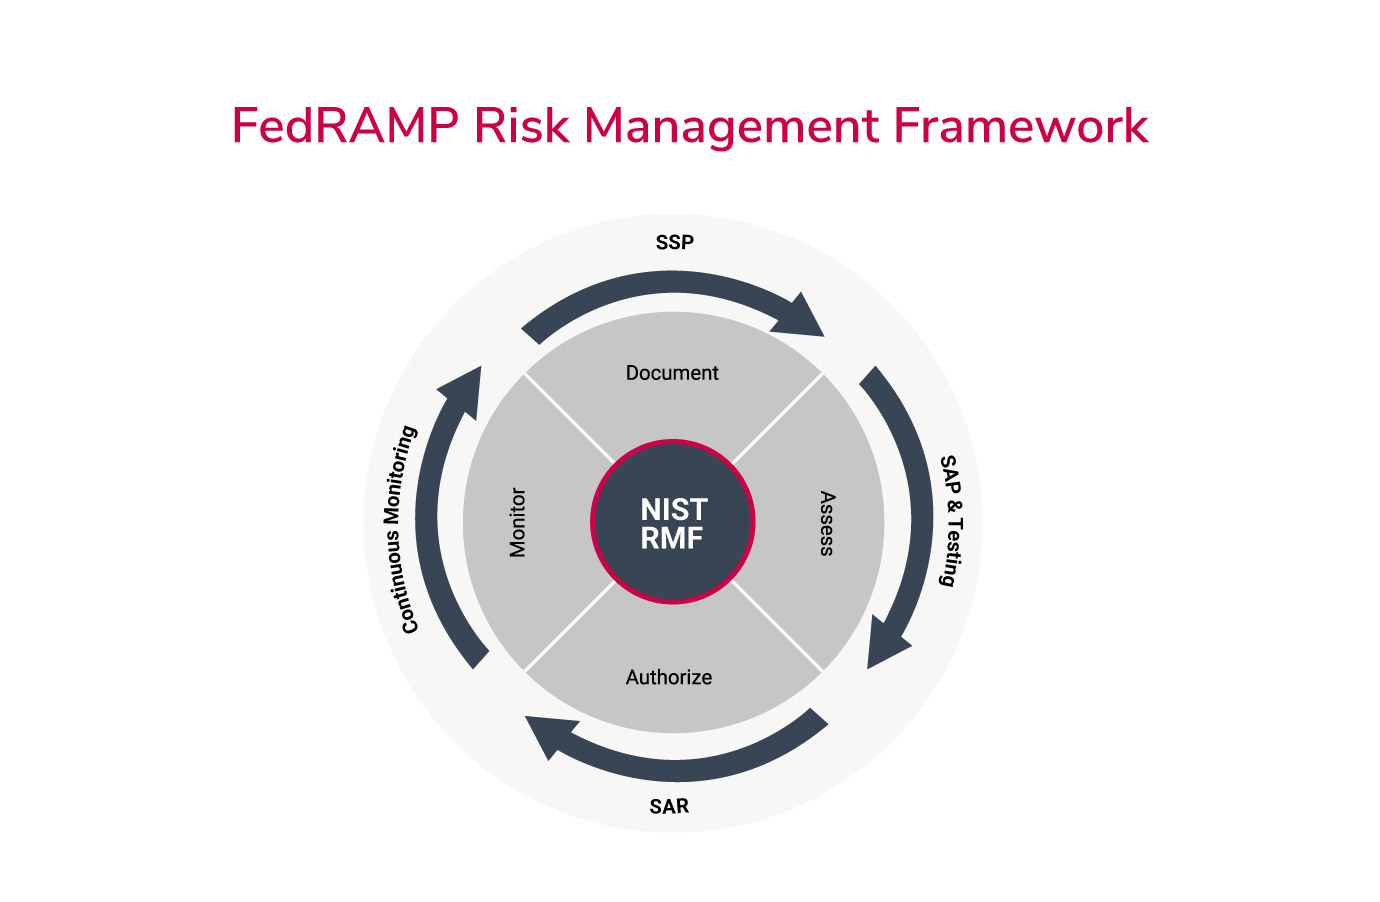 FedRAMP Risk Management framework illustration